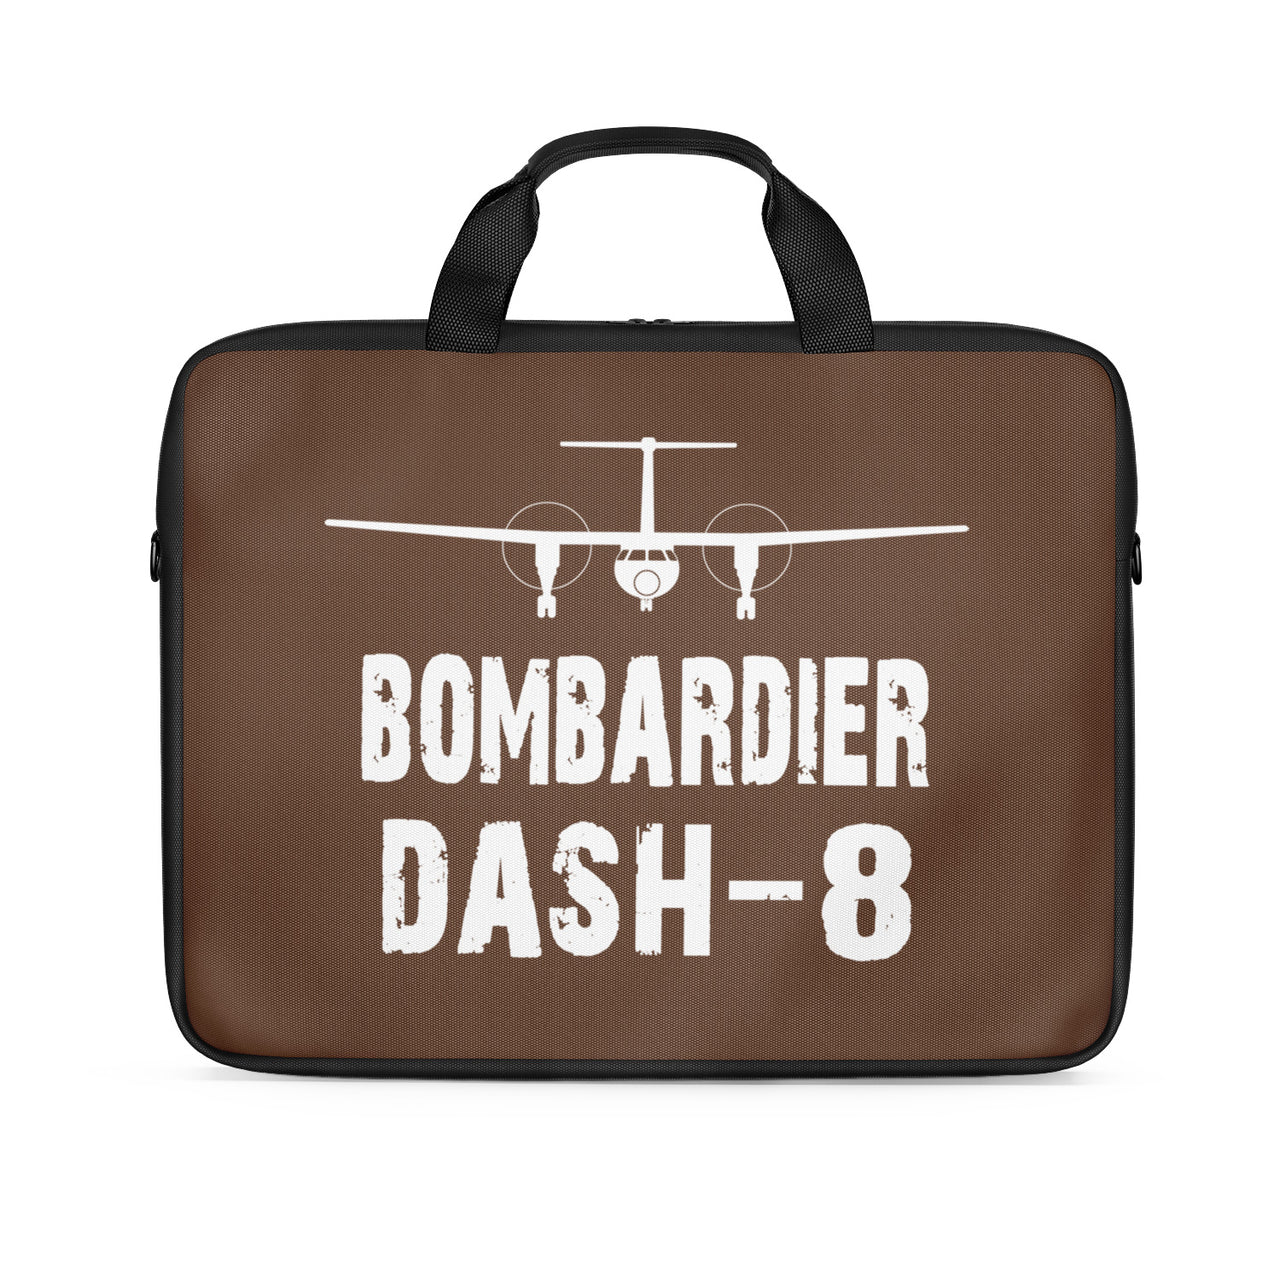 Bombardier Dash-8 & Plane Designed Laptop & Tablet Bags